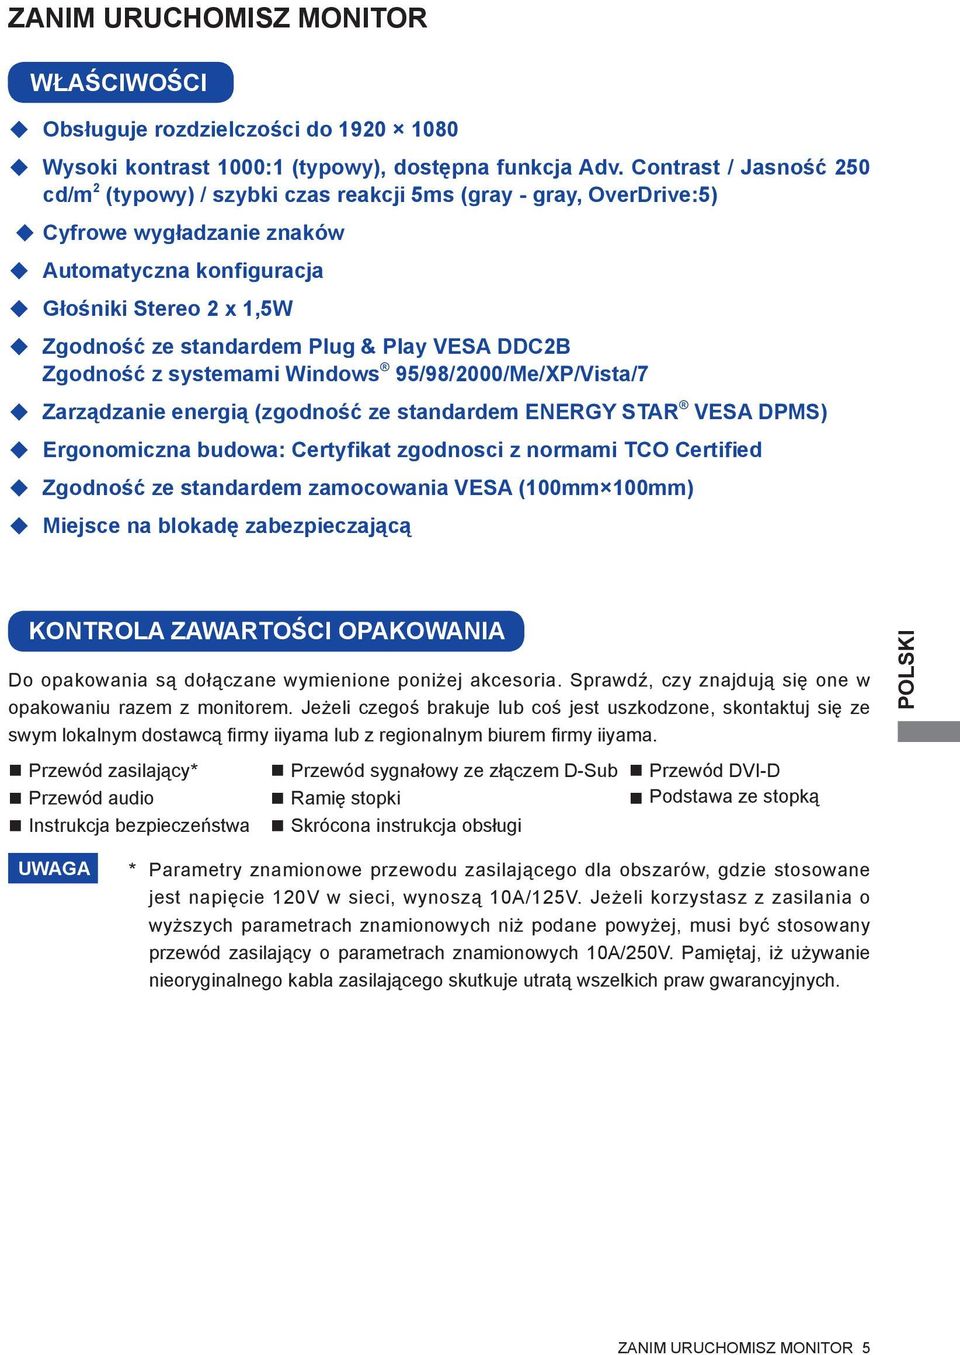 Play VESA DDC2B Zgodność z systemami Windows 95/98/2000/Me/XP/Vista/7 Zarządzanie energią (zgodność ze standardem ENERGY STAR VESA DPMS) Ergonomiczna budowa: Certyfikat zgodnosci z normami TCO